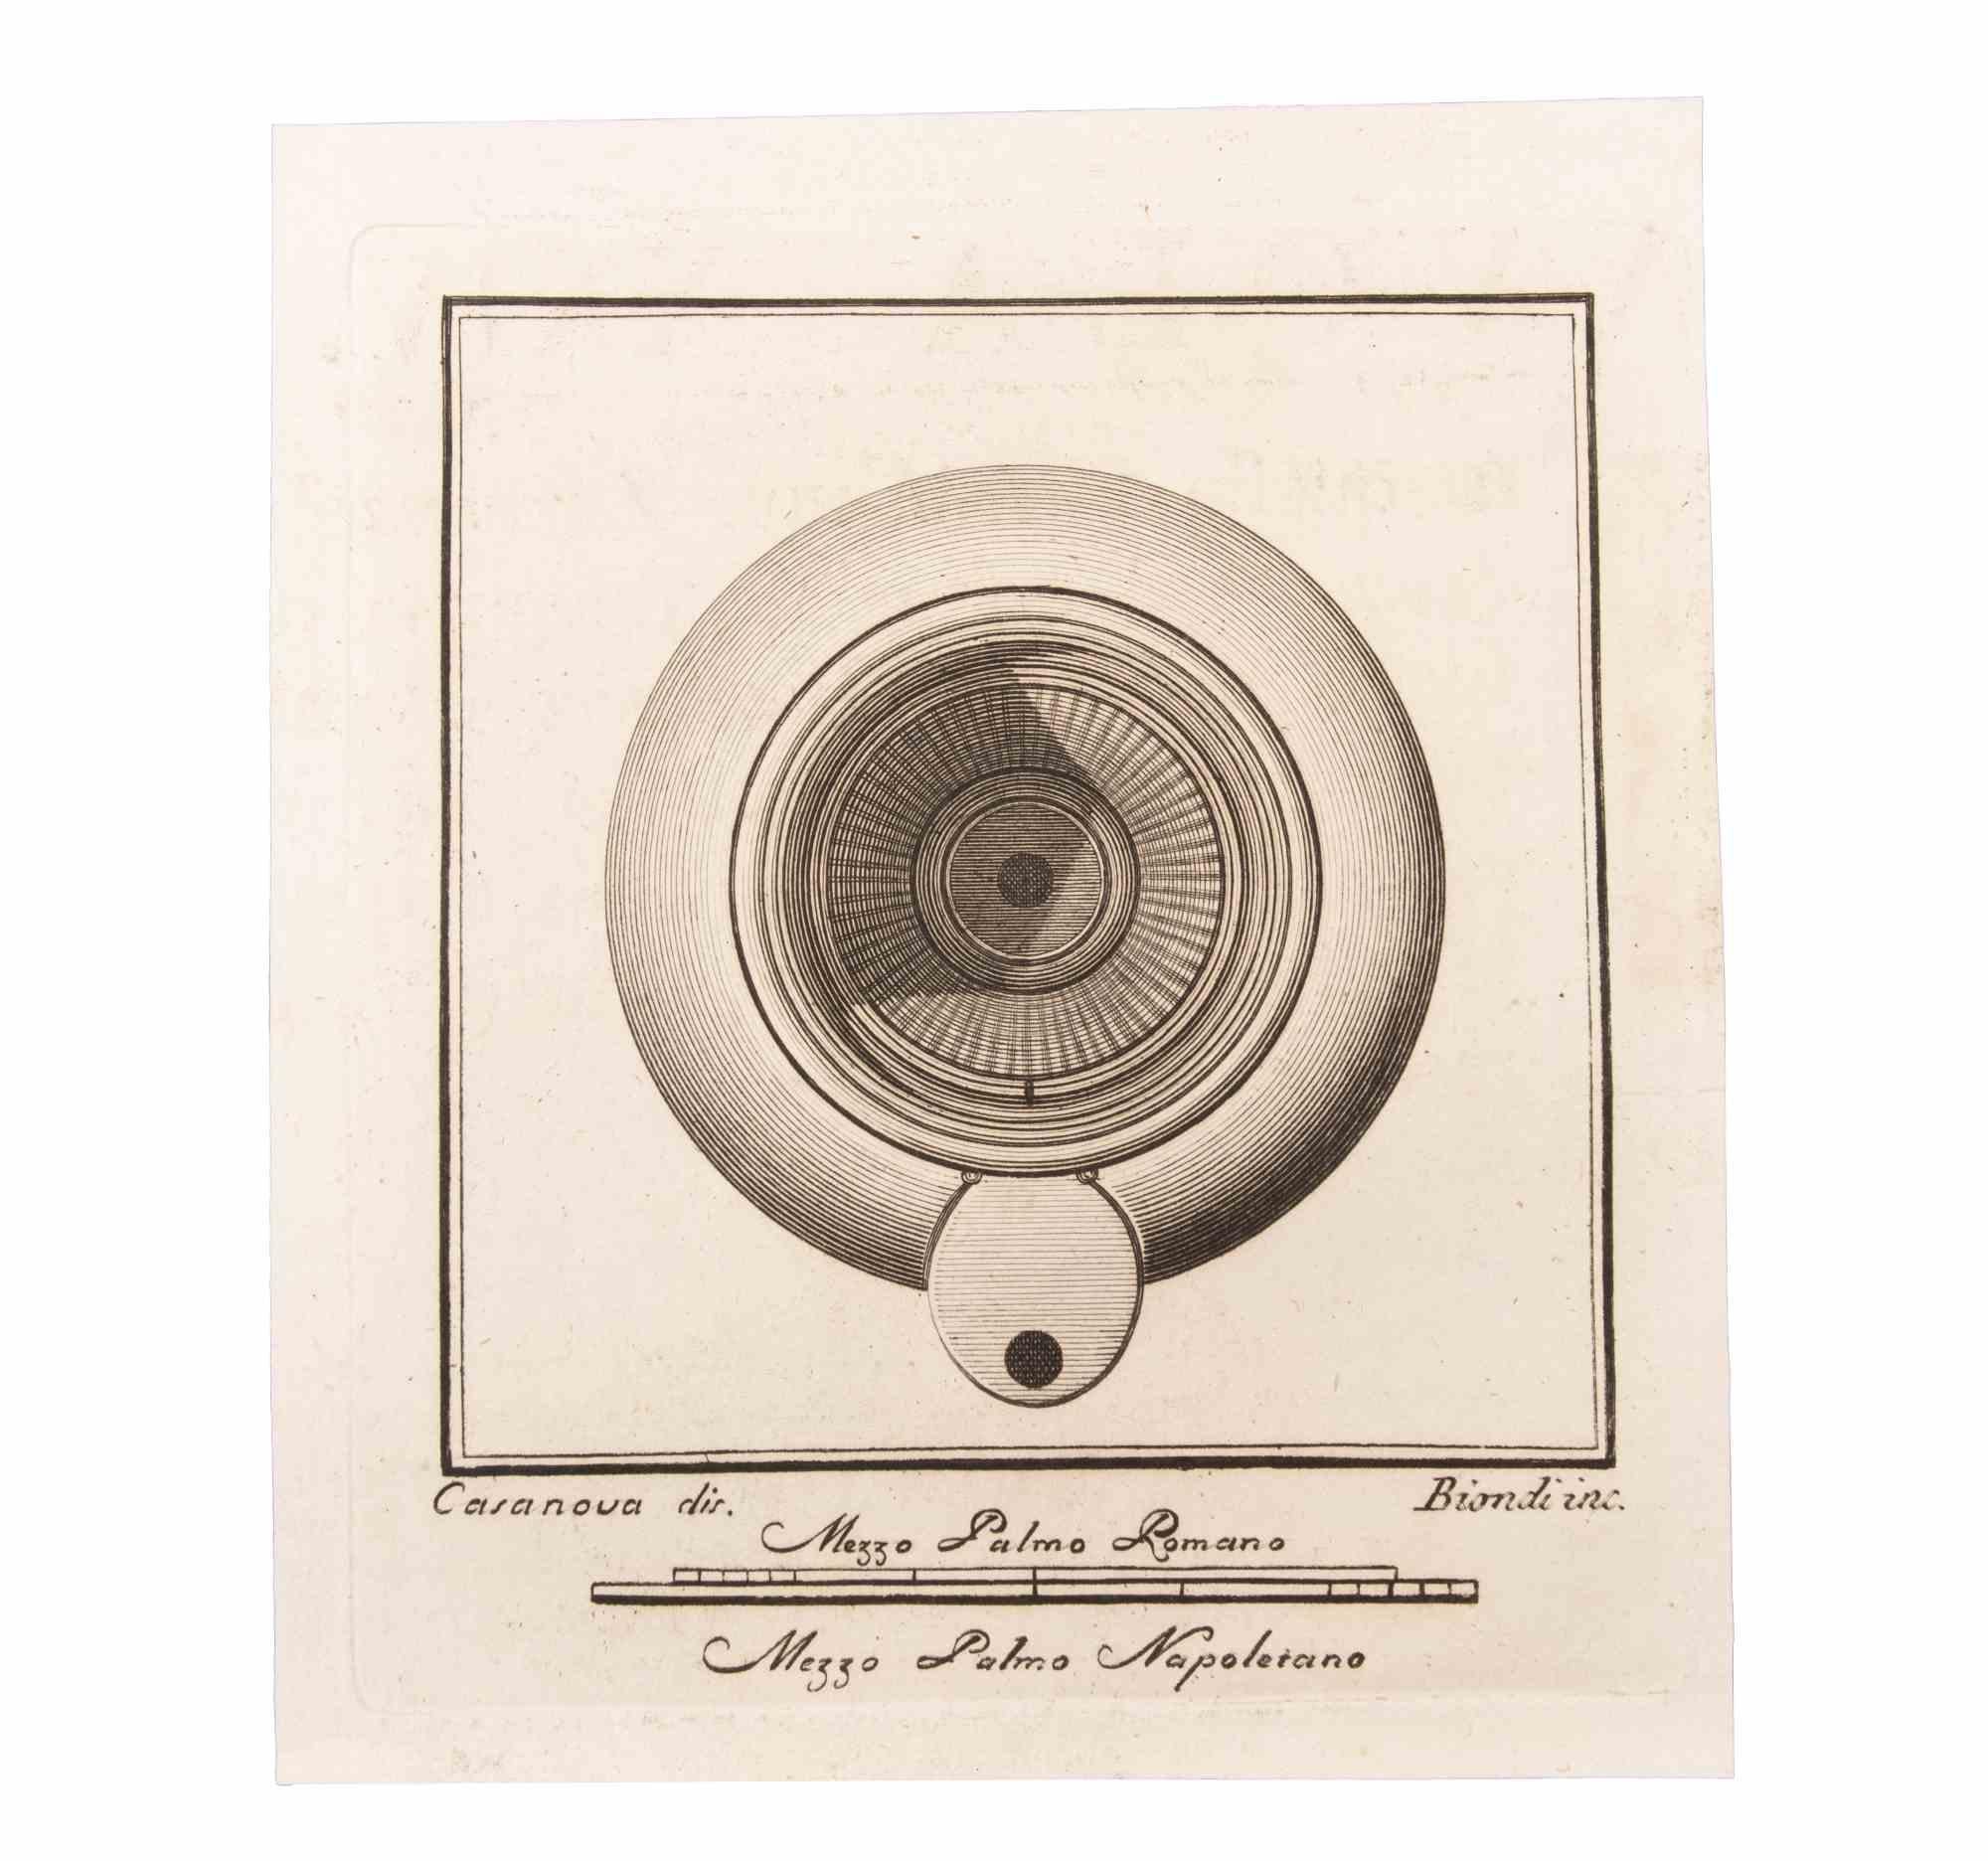 Oil Lamp est une gravure réalisée par  Luigi Biondi (1776-1839).

La gravure appartient à la suite d'estampes "Antiquités d'Herculanum exposées" (titre original : "Le Antichità di Ercolano Esposte"), un volume de huit gravures des découvertes